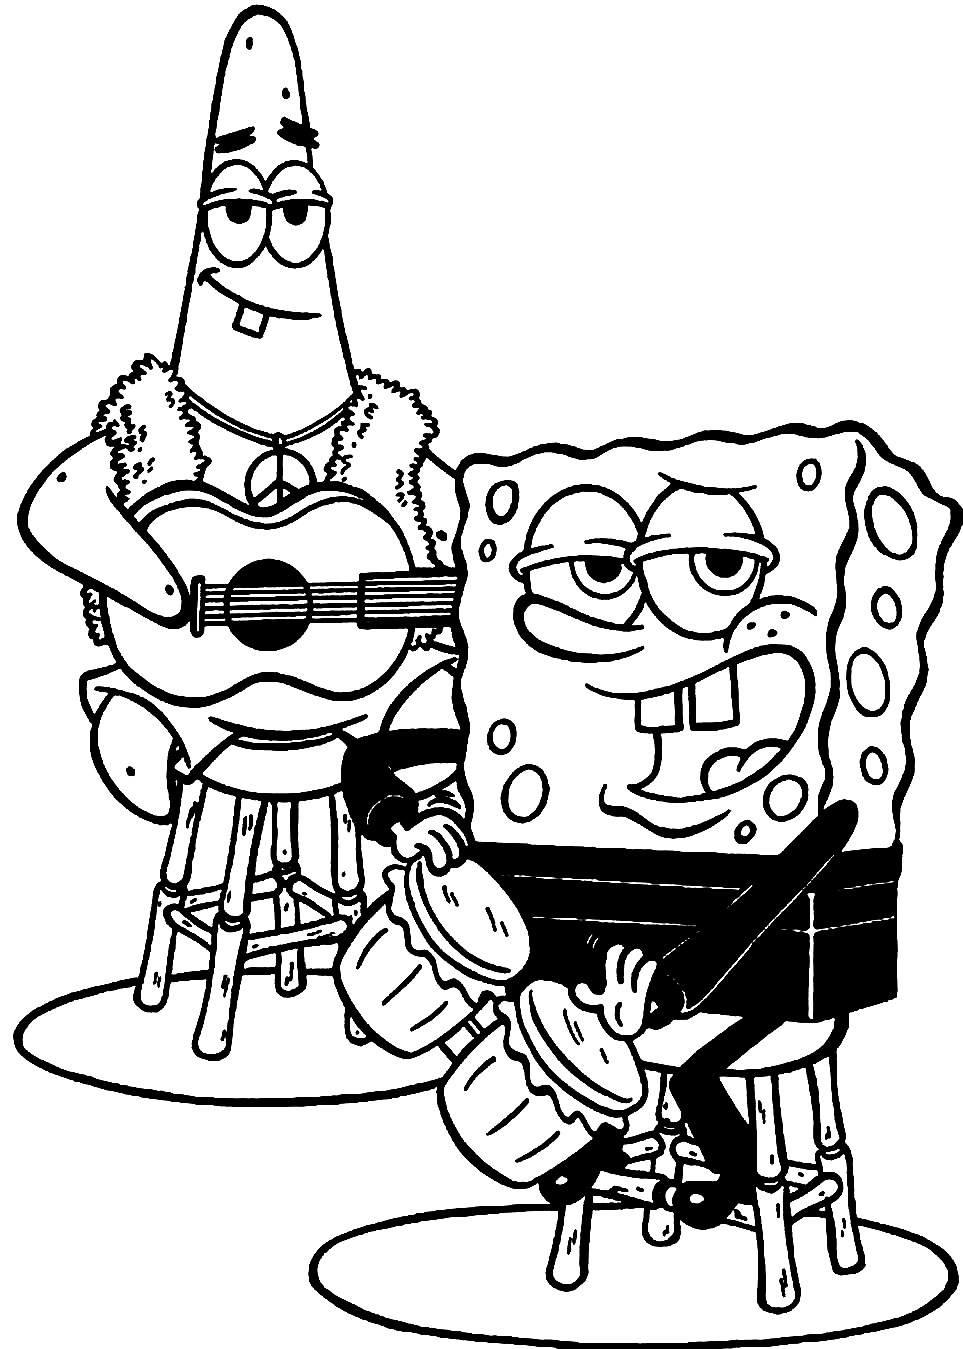 Patrick en Spongebob 1 van Spongebob